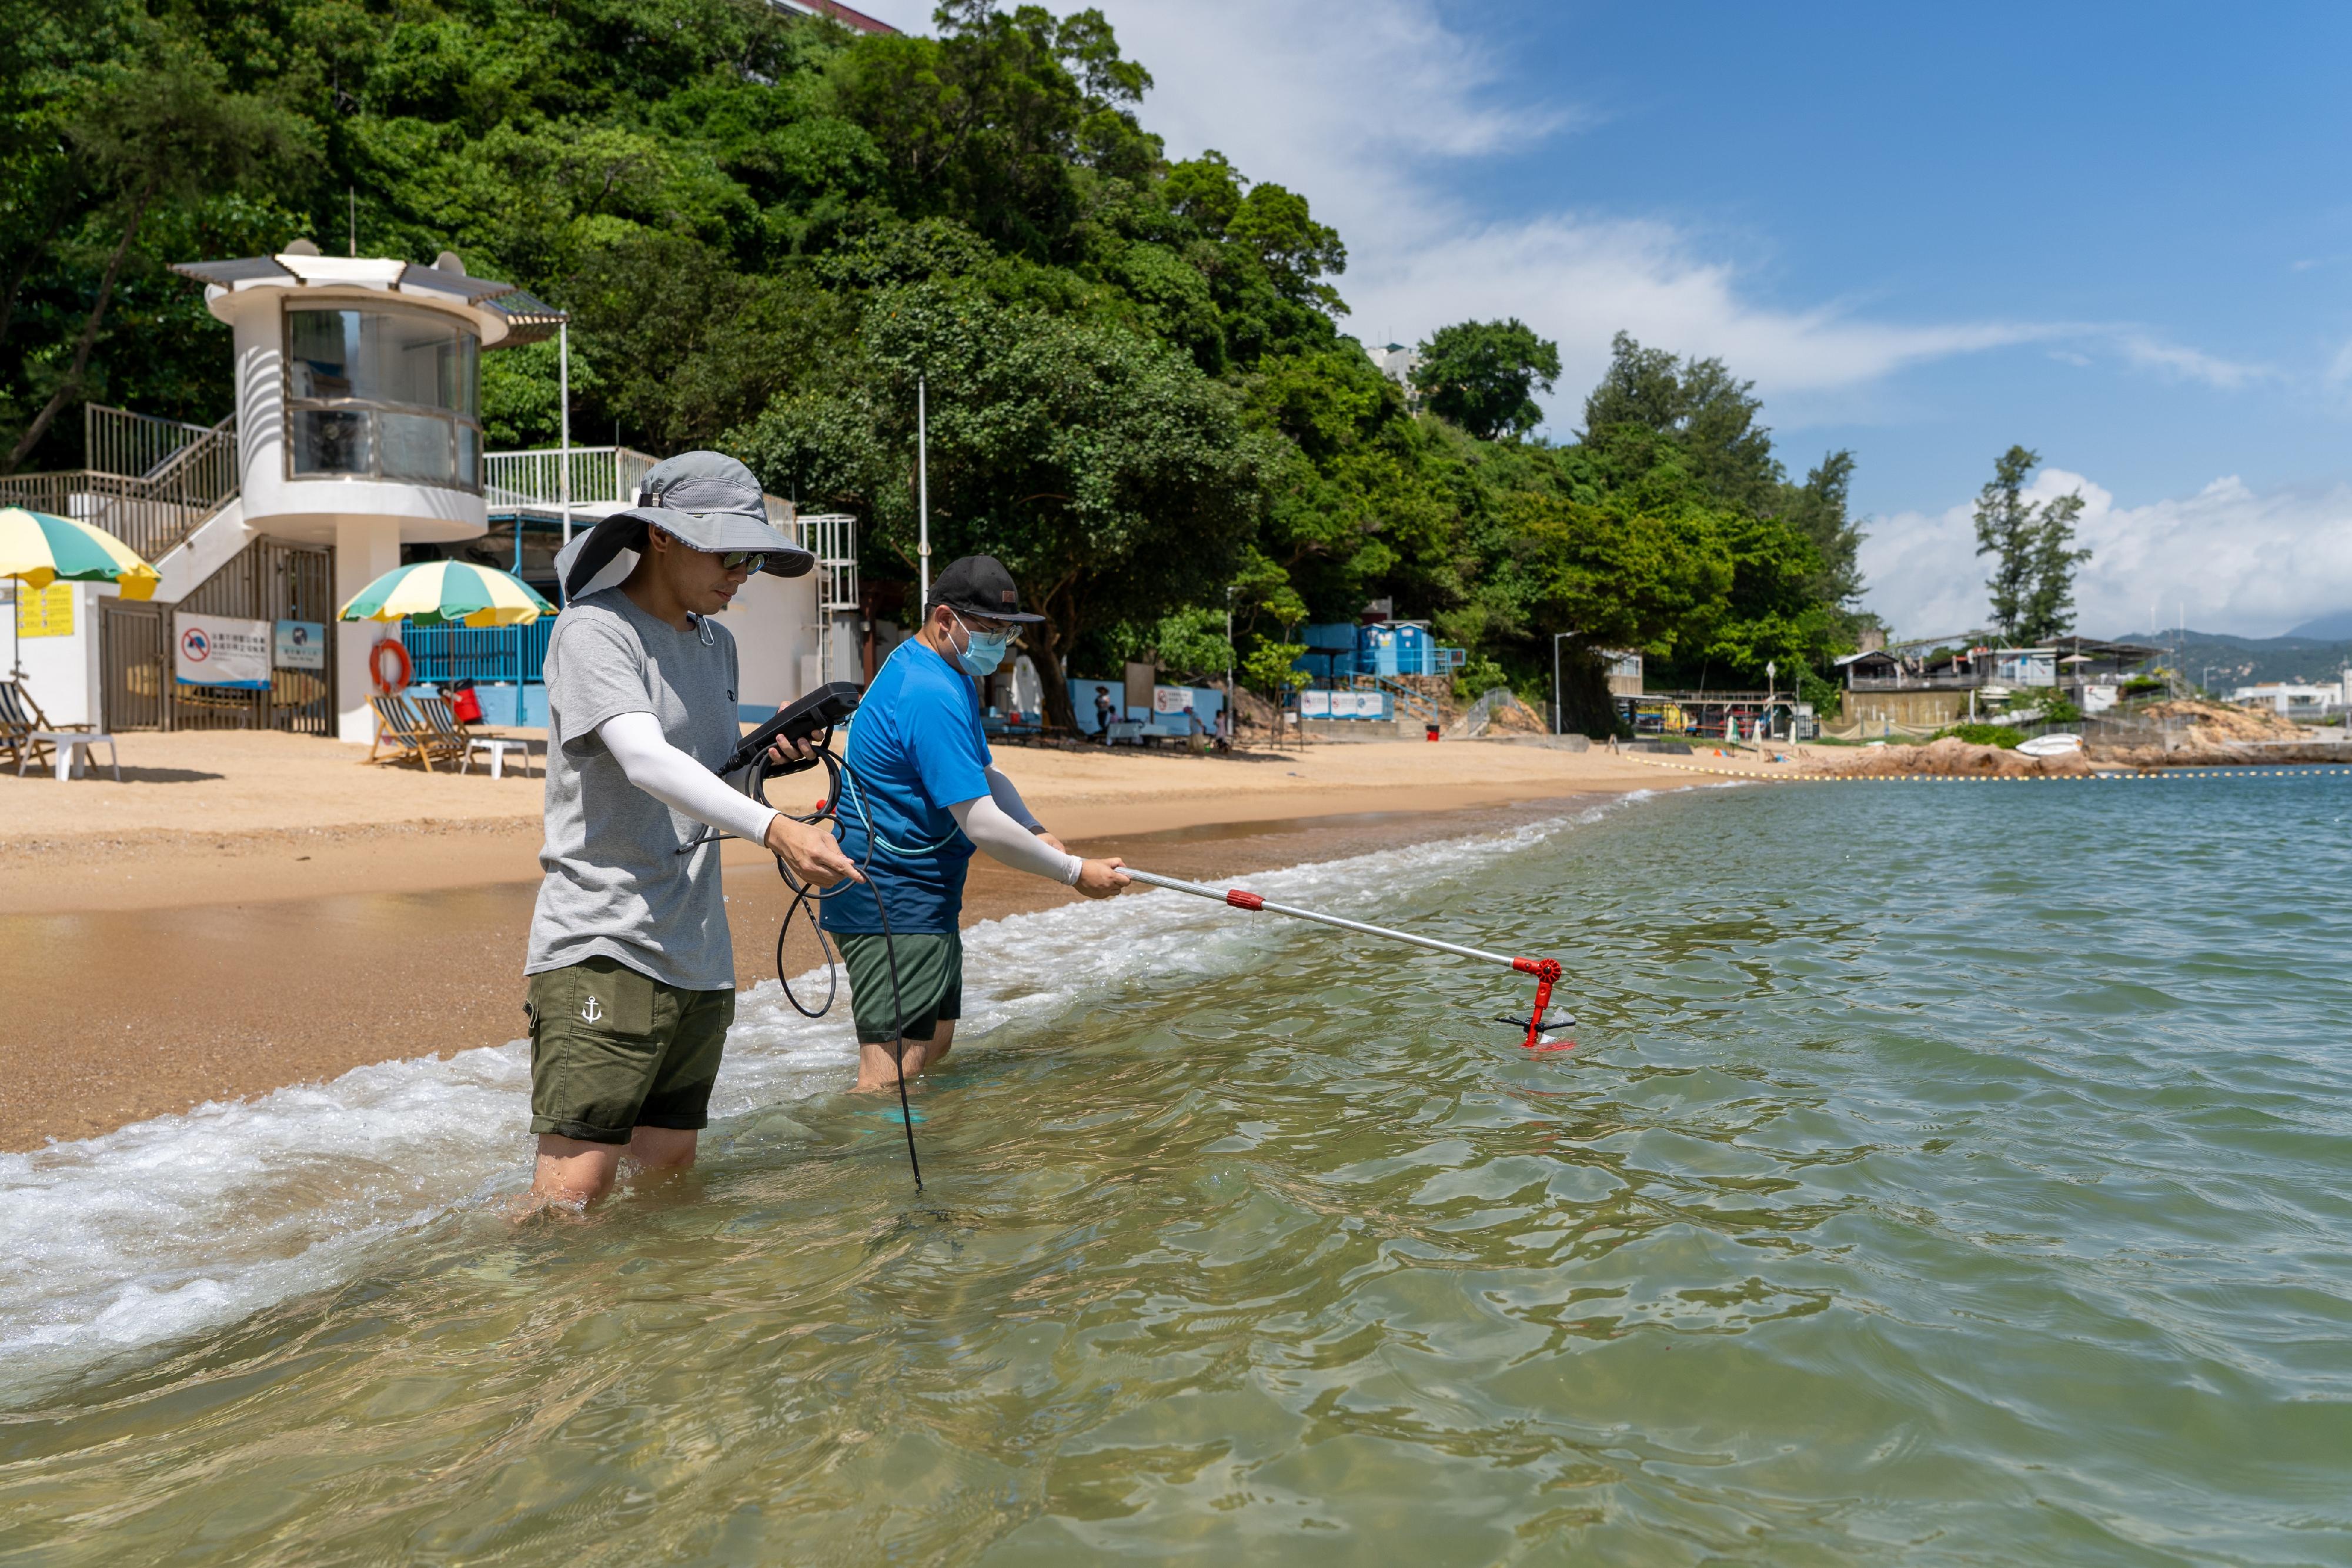 二○二三年香港泳灘水質年報顯示，全港所有憲報公布泳灘已連續14年全面符合細菌水質指標。圖示環境保護署人員在泳灘進行現場測量及採集海水樣本。